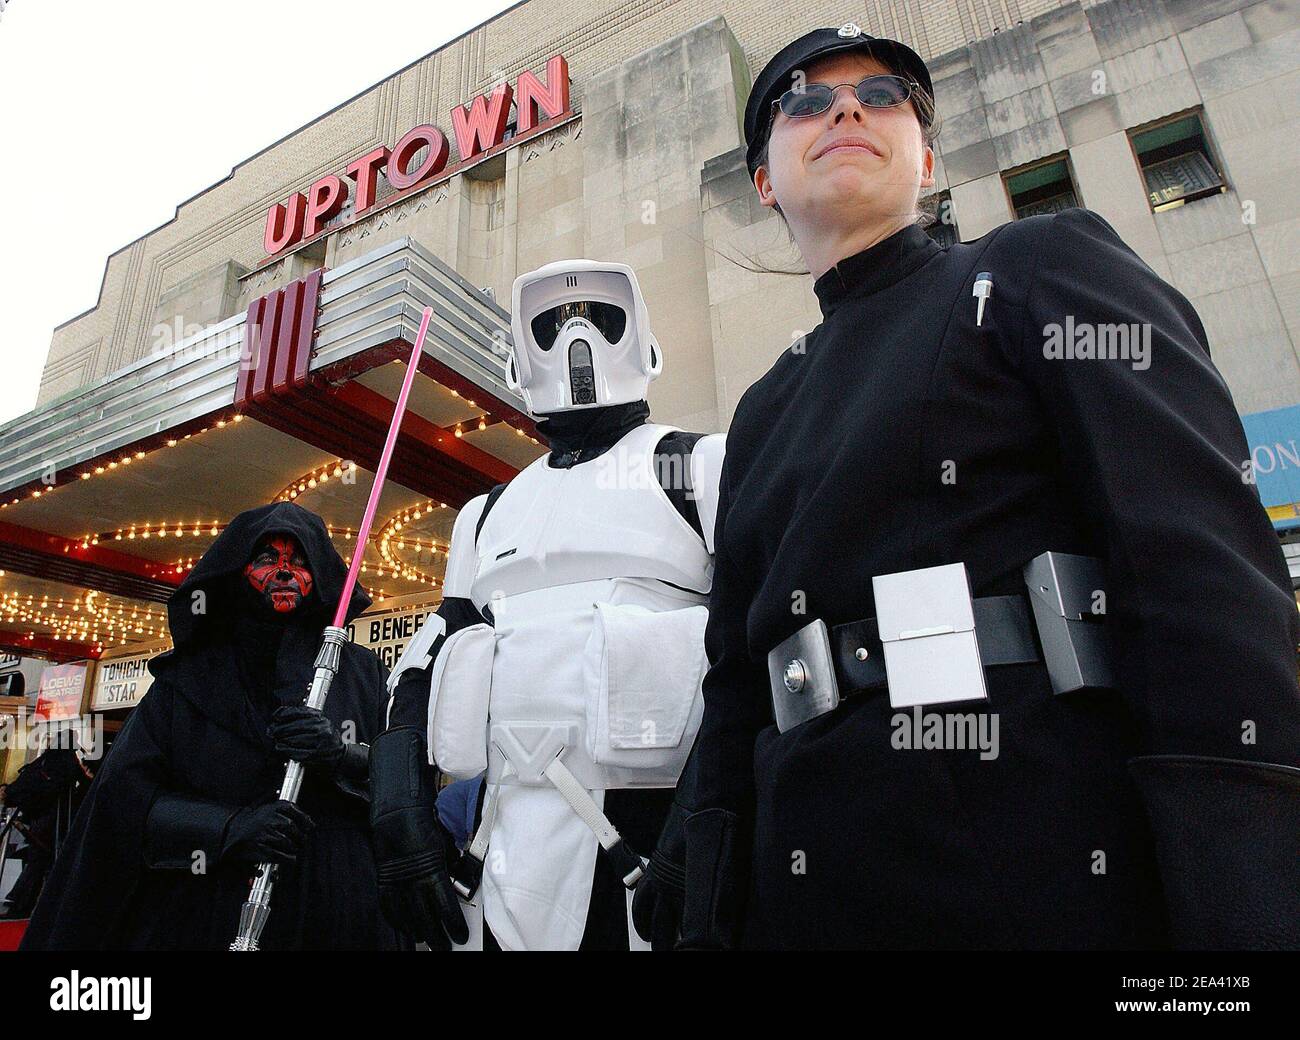 Figuren aus Star Wars-Filmen außerhalb des Uptown Theatre bei der Premiere von 'Star Wars Episode III, die Rache der Sith' in Washington DC, USA, am 12. Mai 2005. Foto von Olivier Douliery/ABACA. Stockfoto